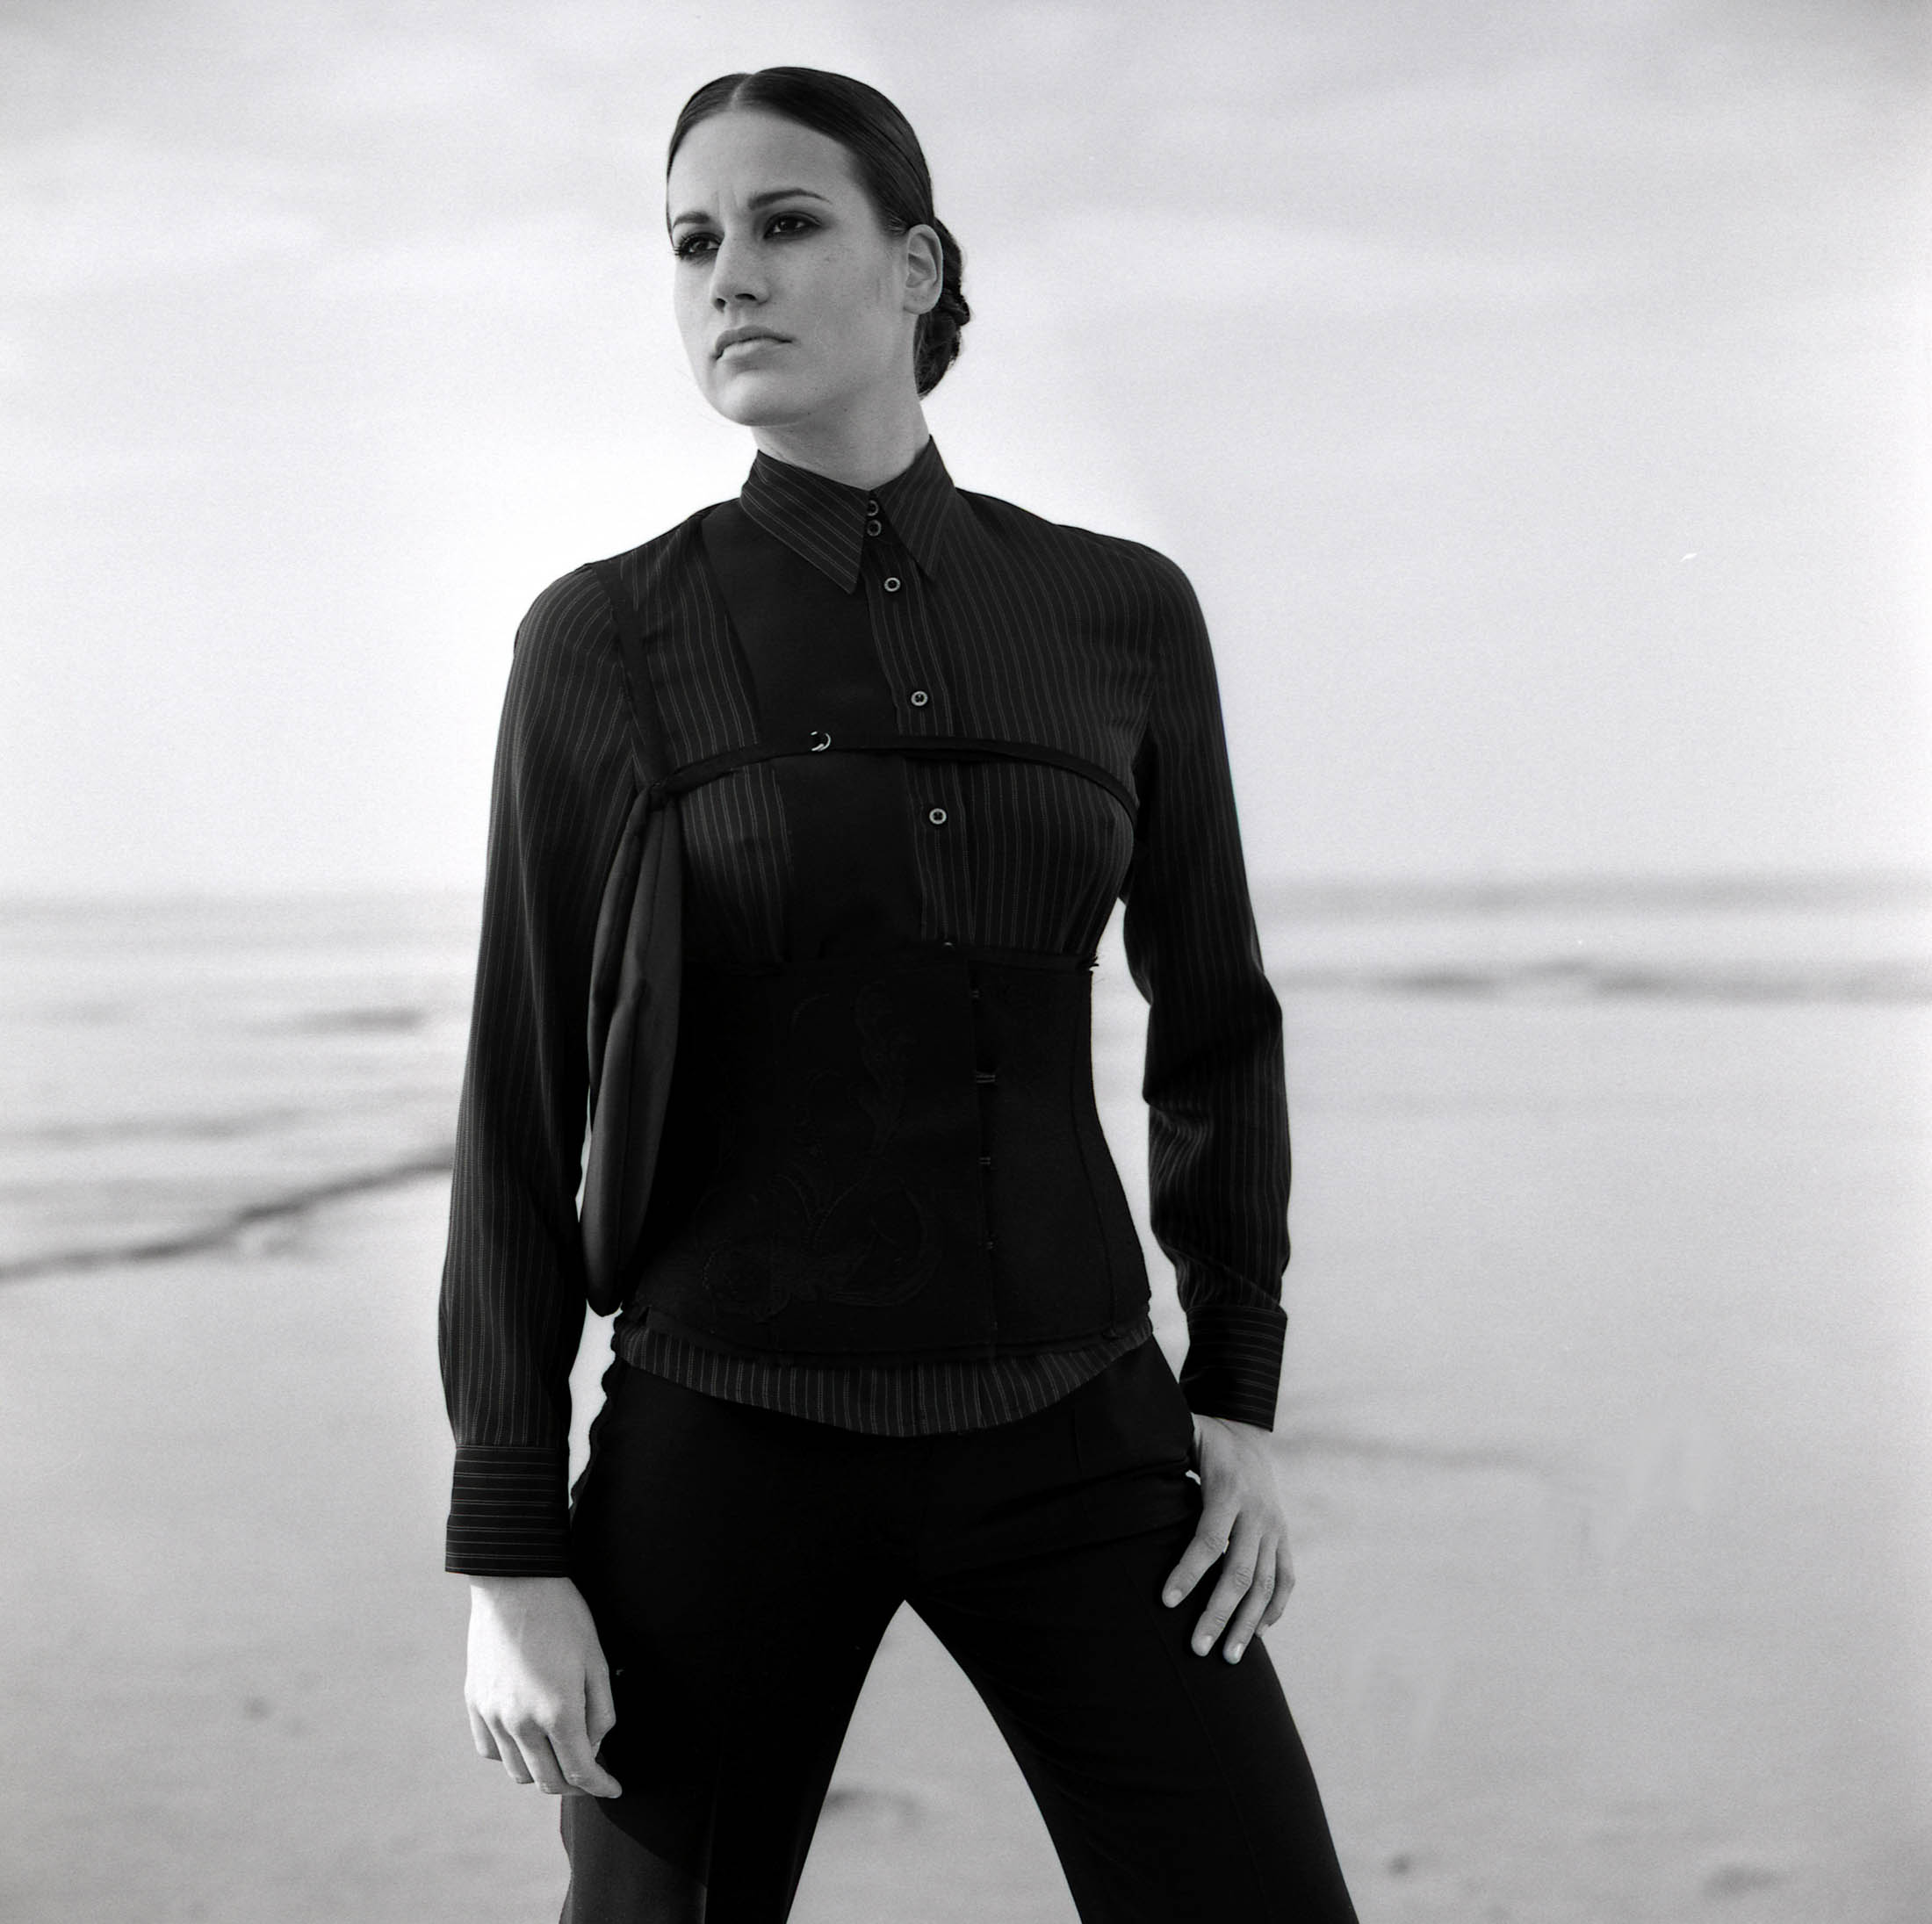 Ein Schwarzweißporträt einer Frau, die an einem Strand steht. Sie trägt eine elegante schwarze Bluse und Hose und blickt mit neutralem Gesichtsausdruck aufmerksam in die Kamera. © Fotografie Tomas Rodriguez